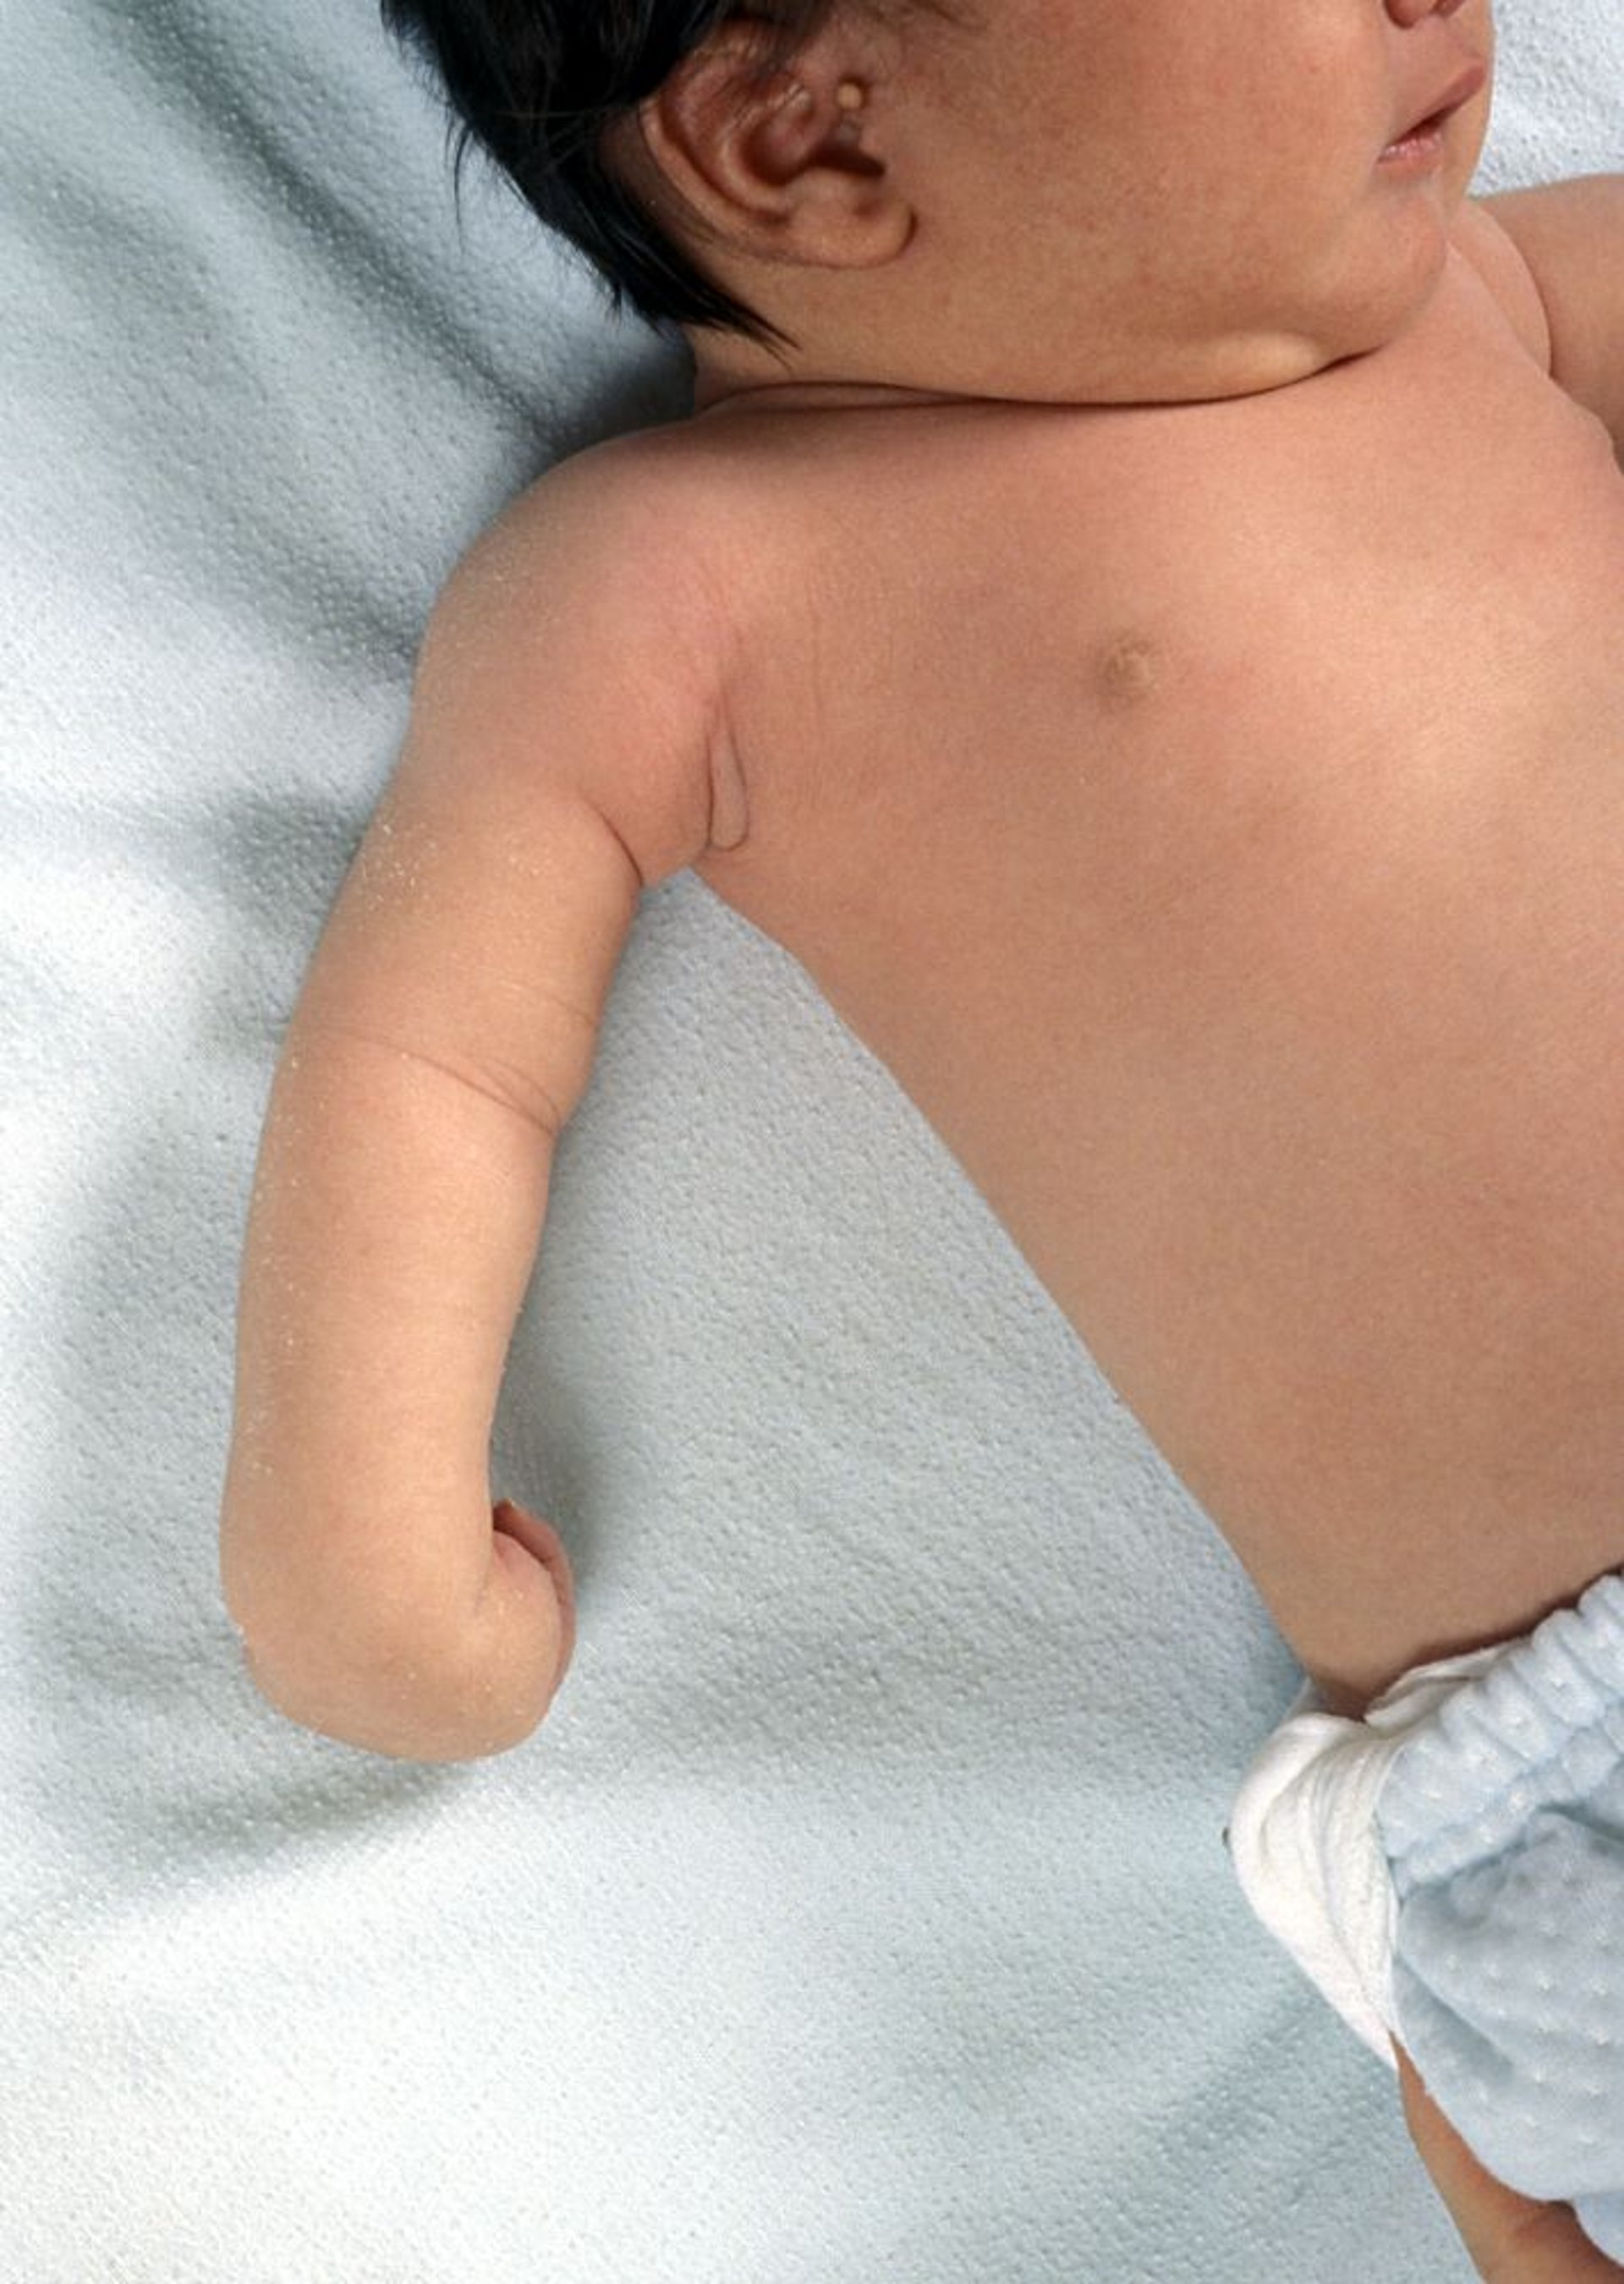 Paralisia de Erb em um recém-nascido